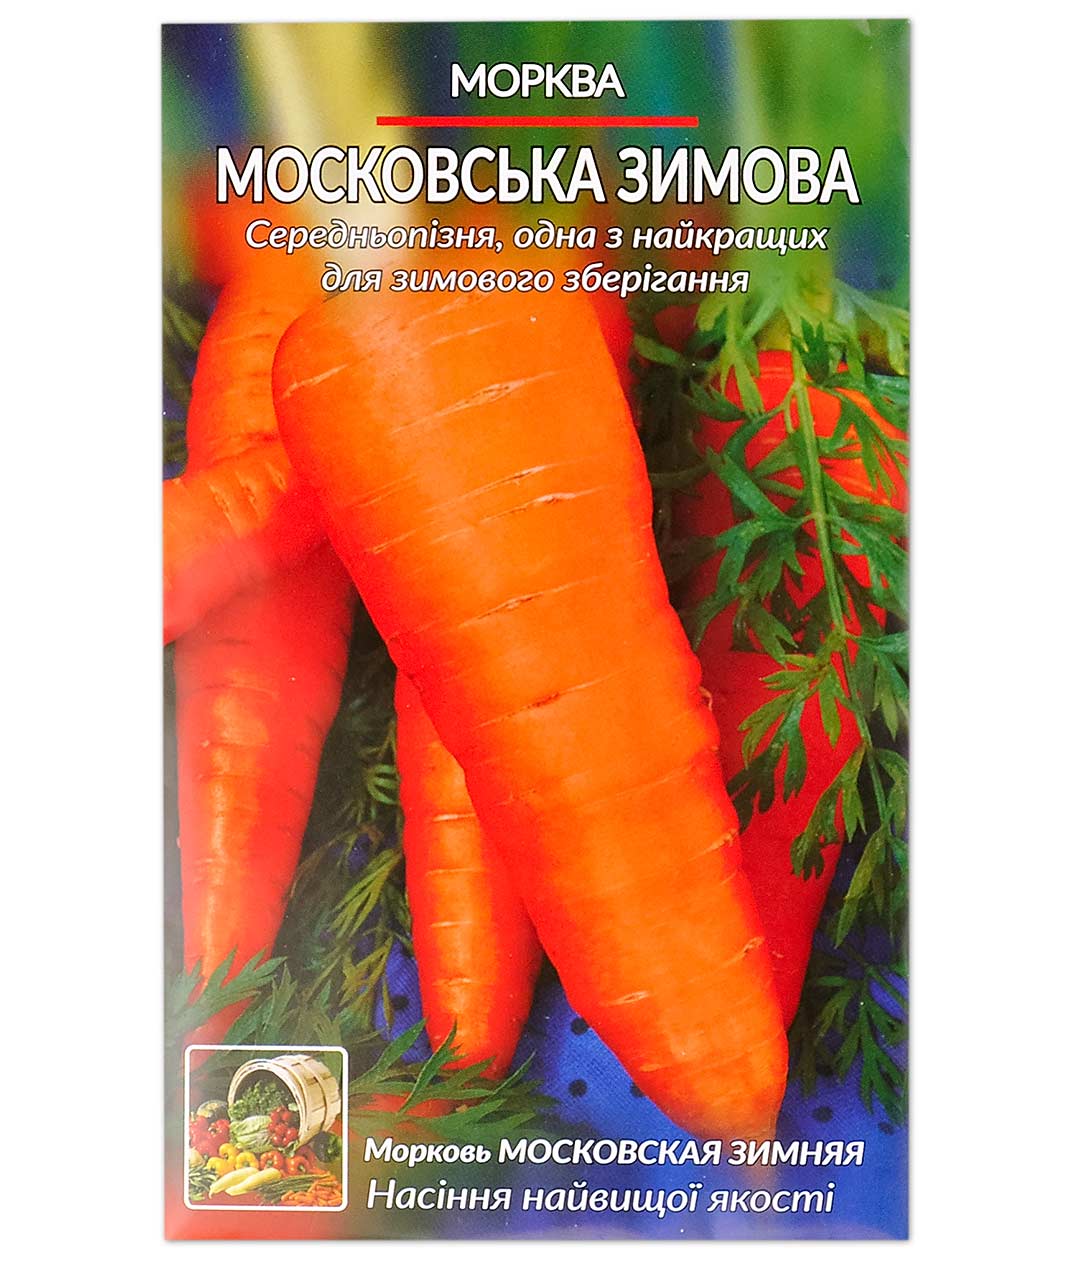 Морковь Московская зимняя семена Алтая